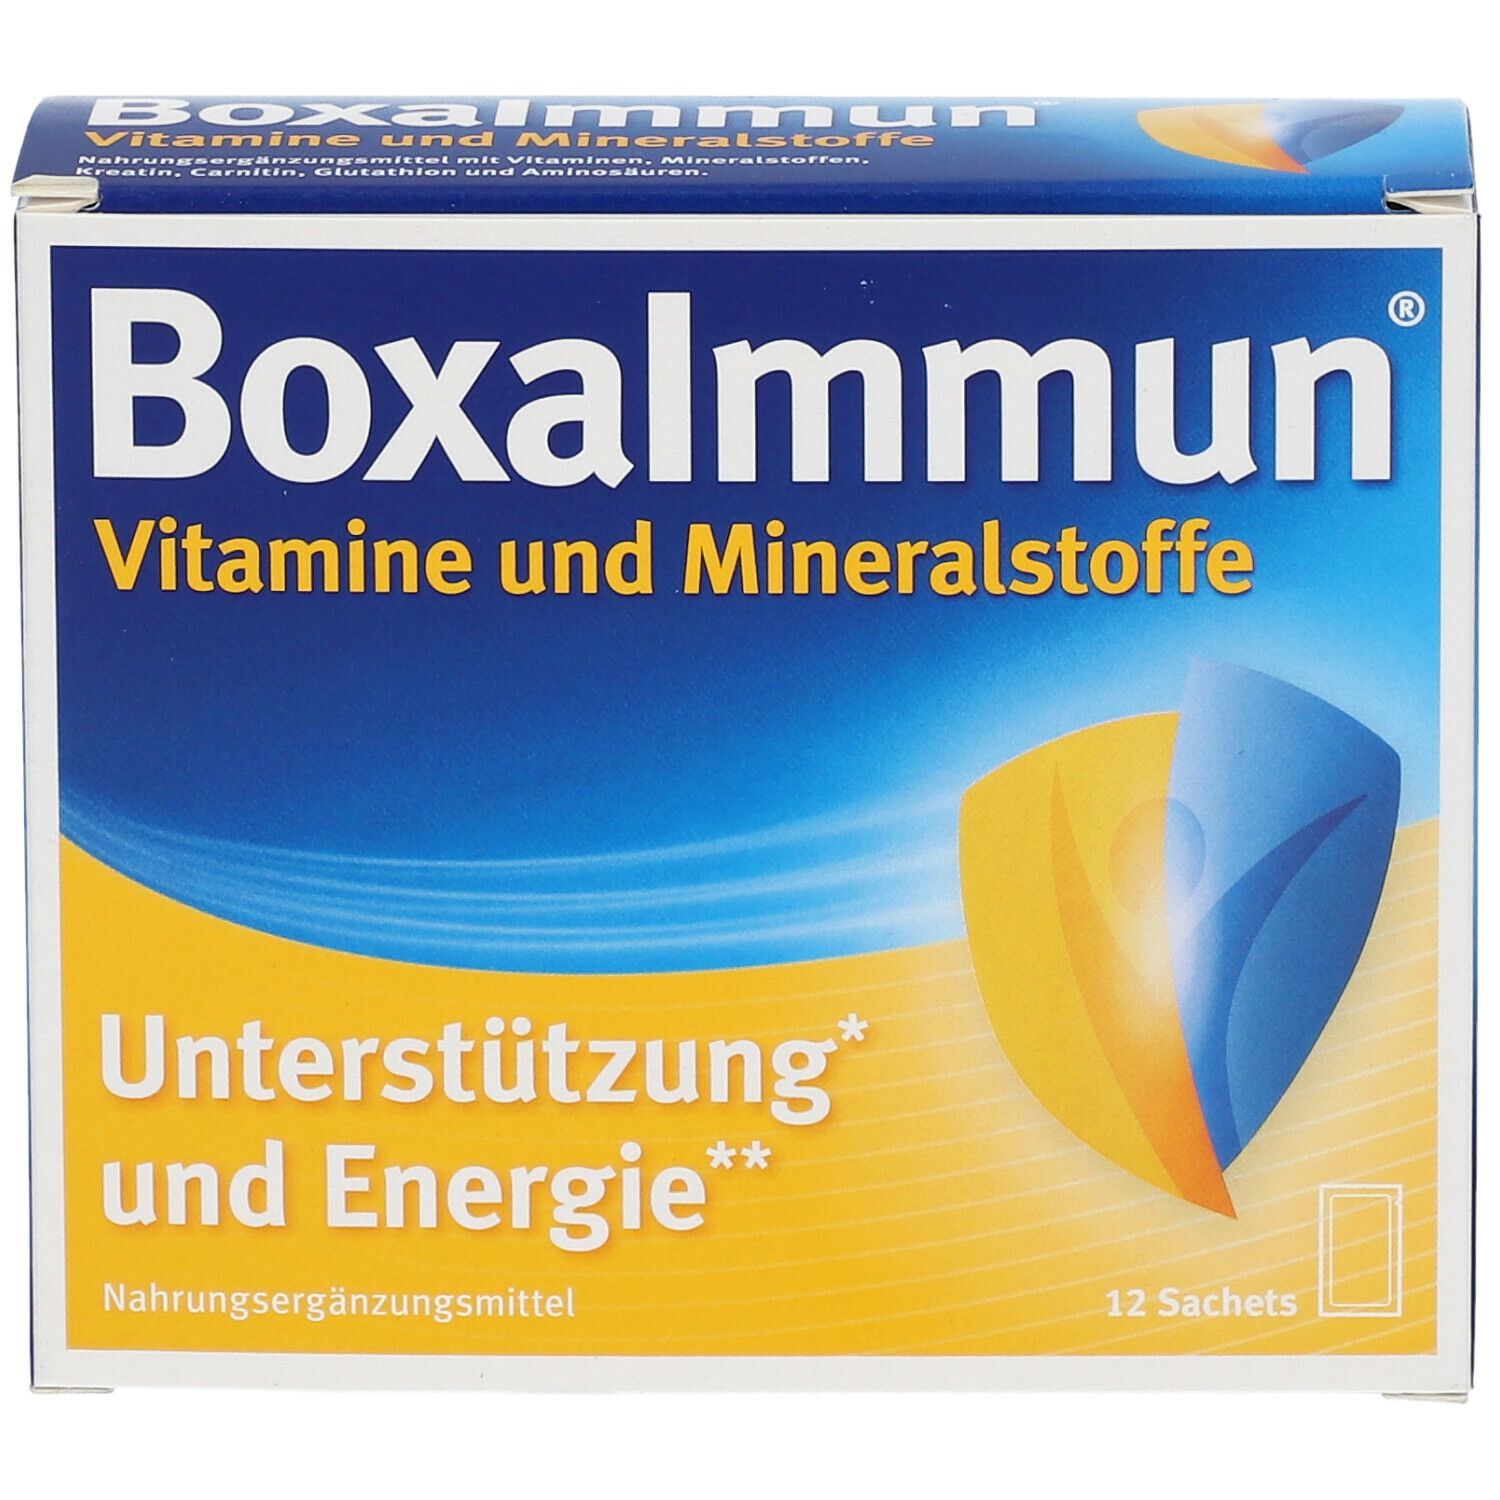 BoxaImmun® Vitamine und Mineralstoffe